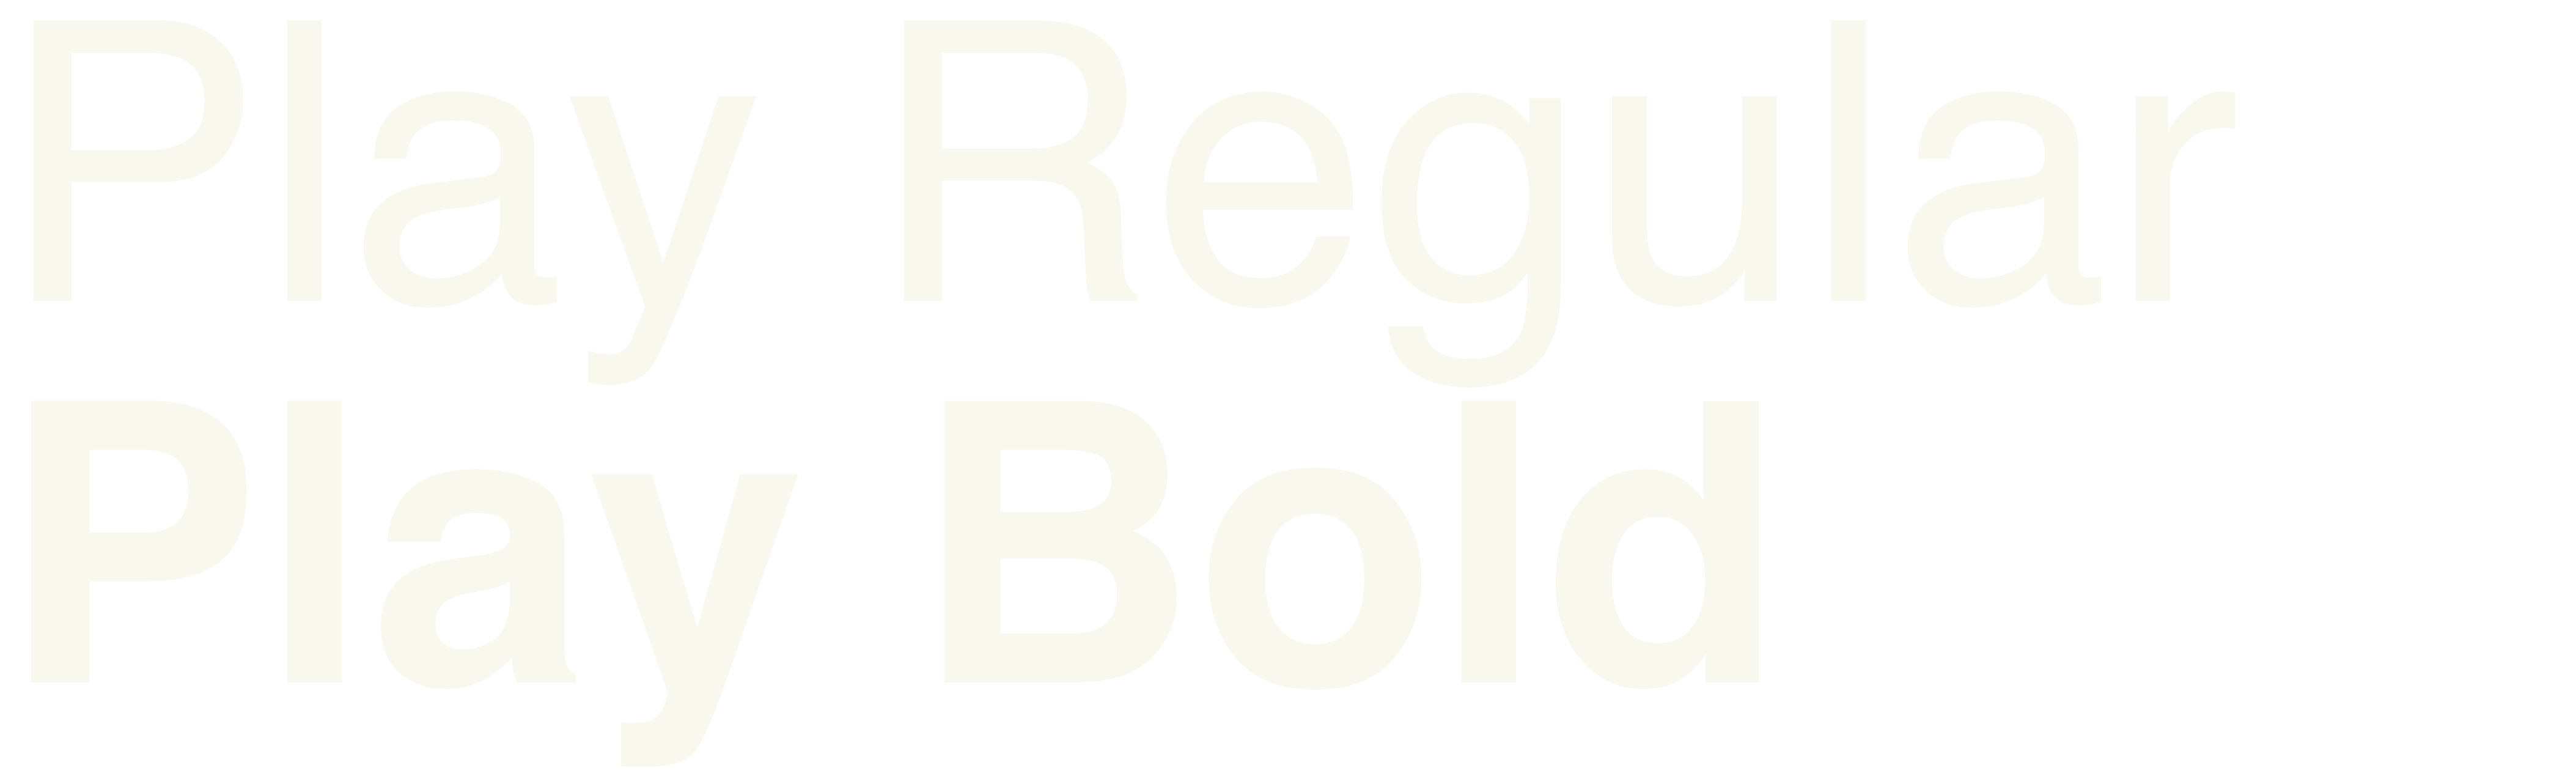 NOG_Play_Typeface